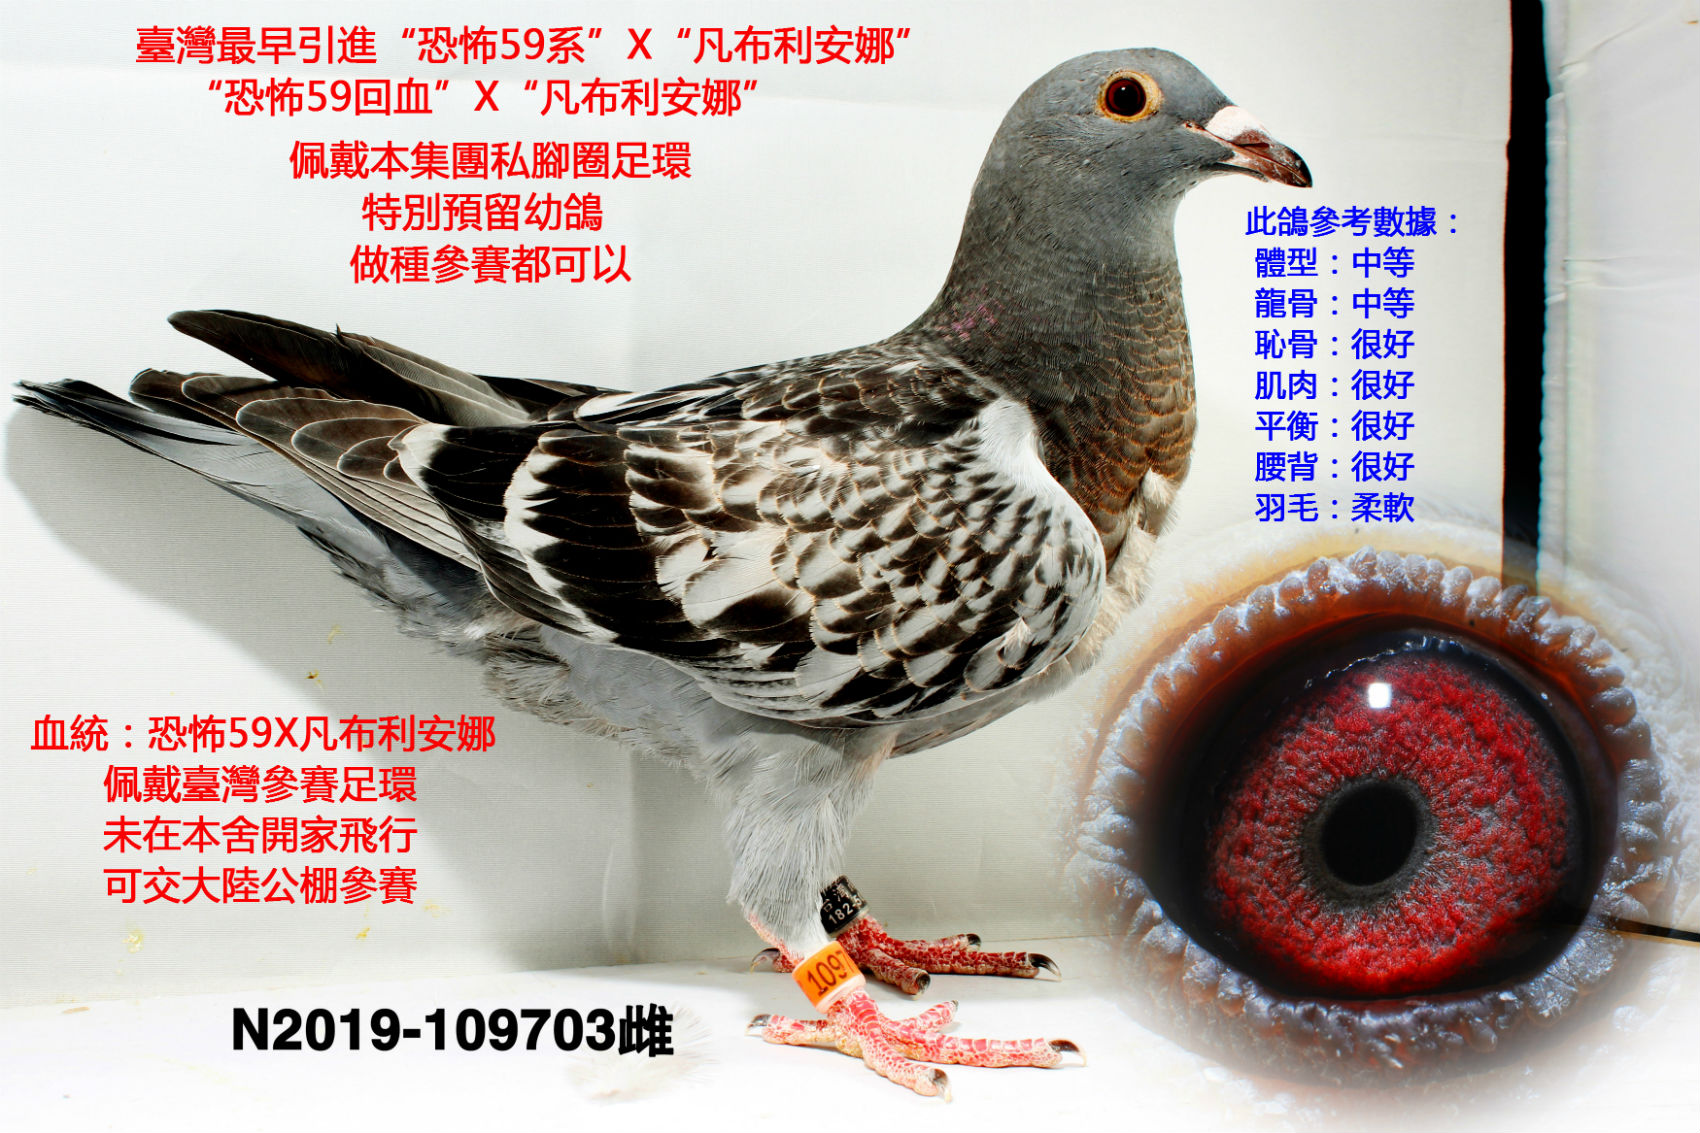 台湾6688鸽会足环图图片